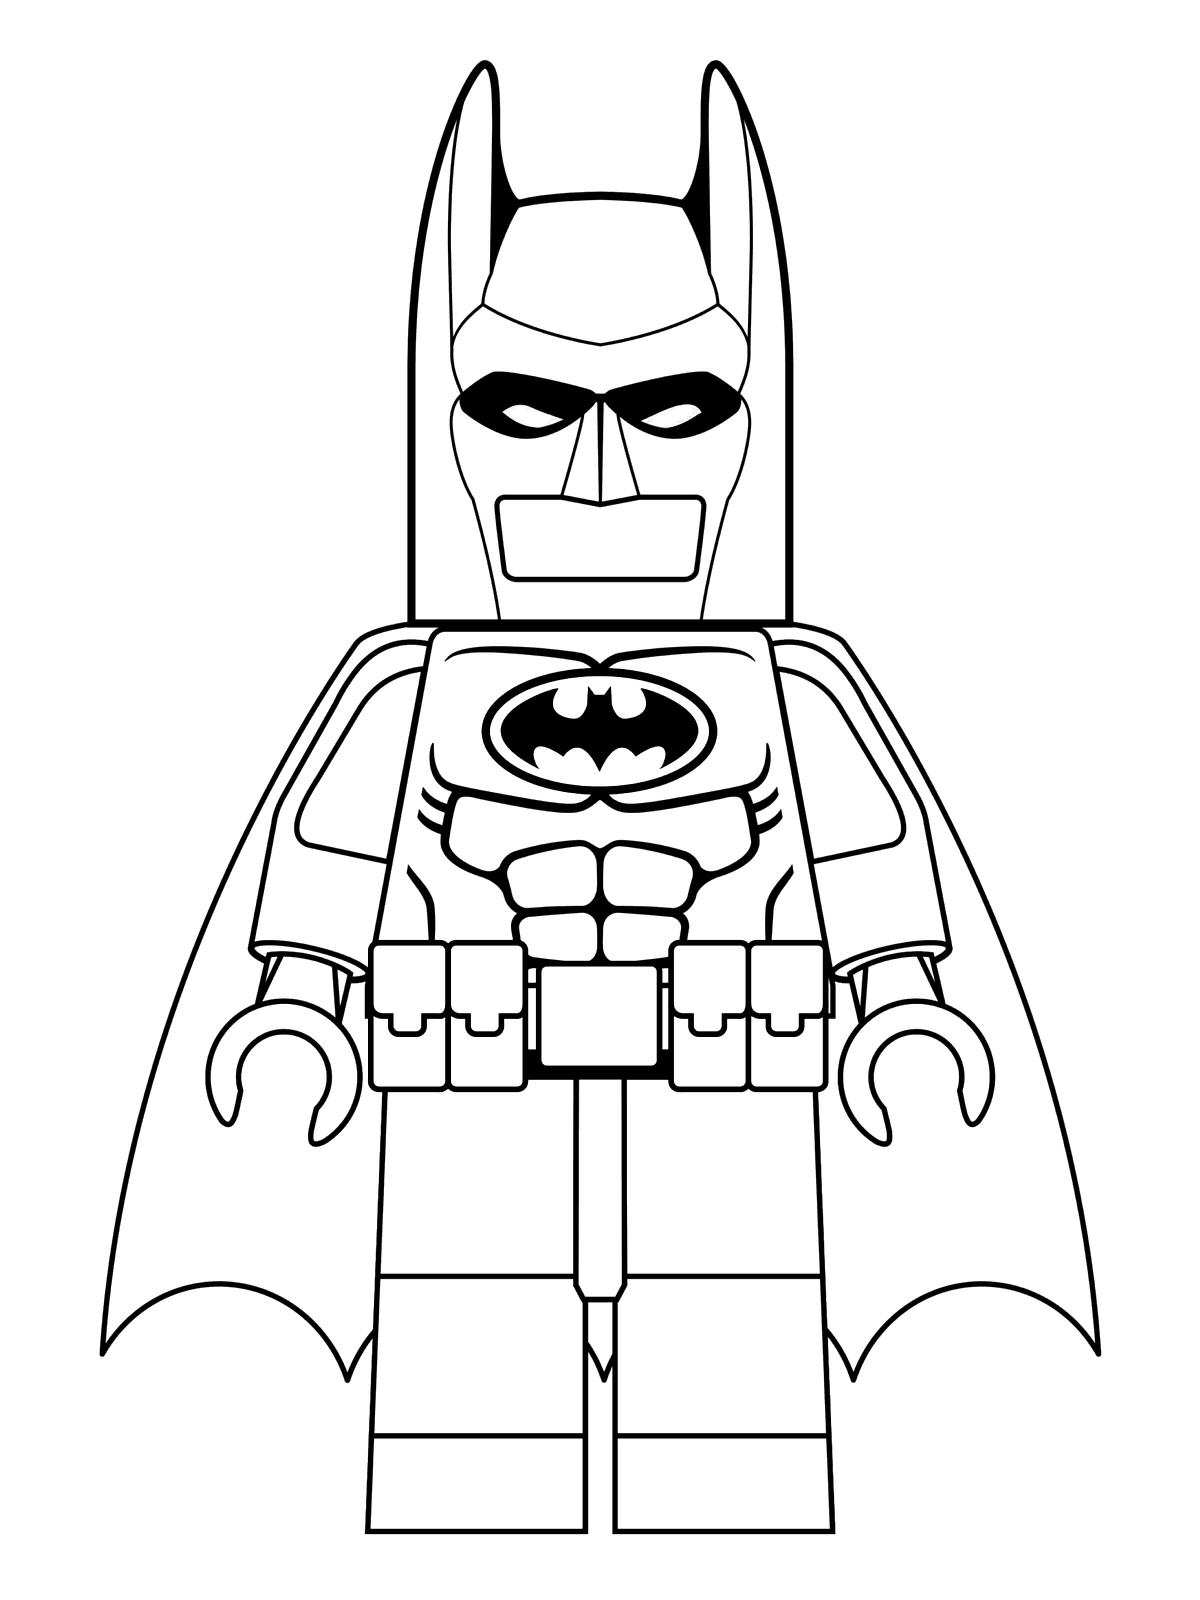 Imagen de Lego Batman para descargar y colorear - Lego Batman - Just Color  Niños : Dibujos para colorear para niños